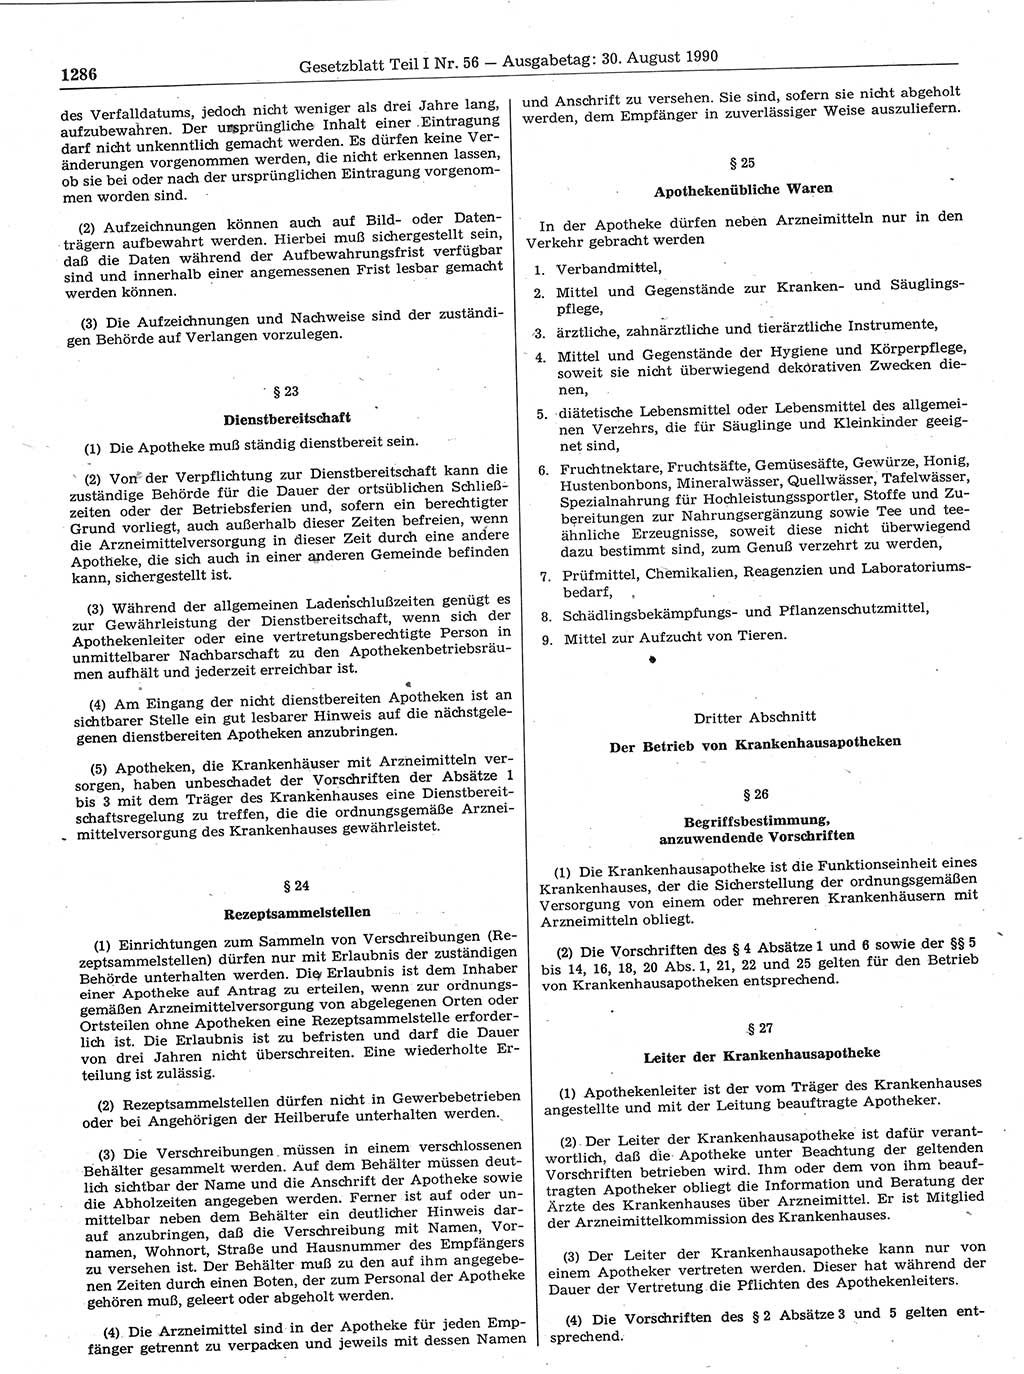 Gesetzblatt (GBl.) der Deutschen Demokratischen Republik (DDR) Teil Ⅰ 1990, Seite 1286 (GBl. DDR Ⅰ 1990, S. 1286)